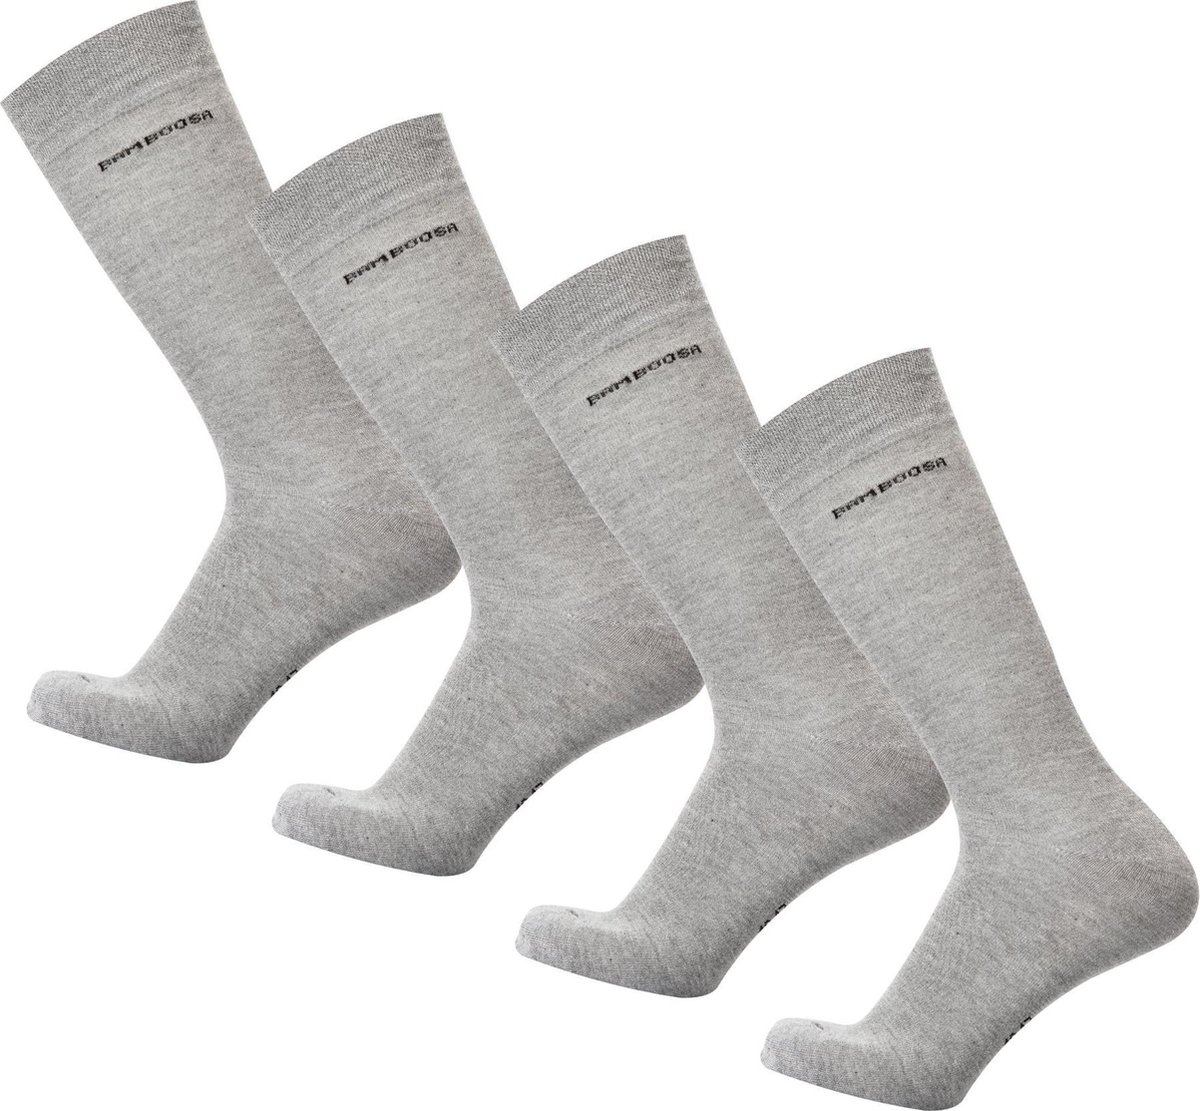 Bamboe Sokken   Anti-zweet Sokken   Naadloze Sokken   4 Paar - Grijs   Maat: 39-42   Merk: Bamboosa